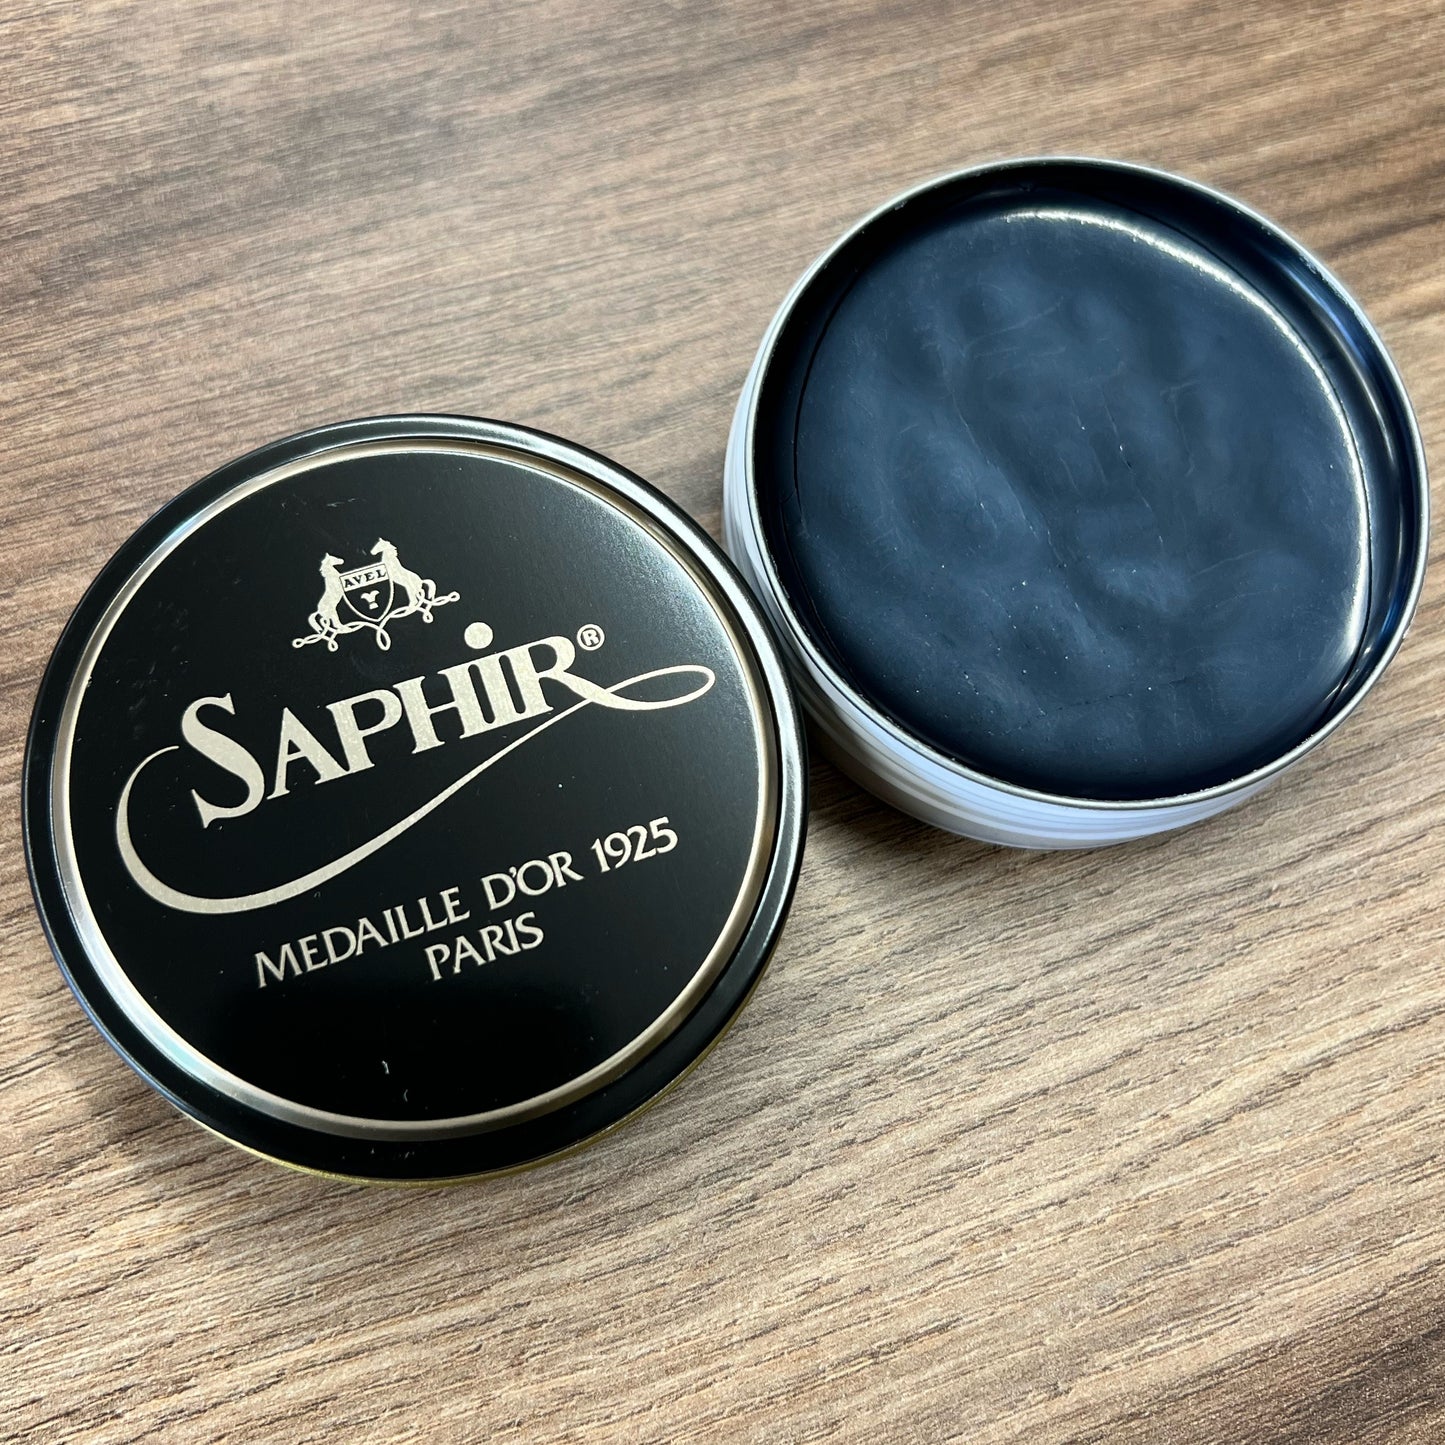 Saphir Medaille D'or Shoe Polish Wax